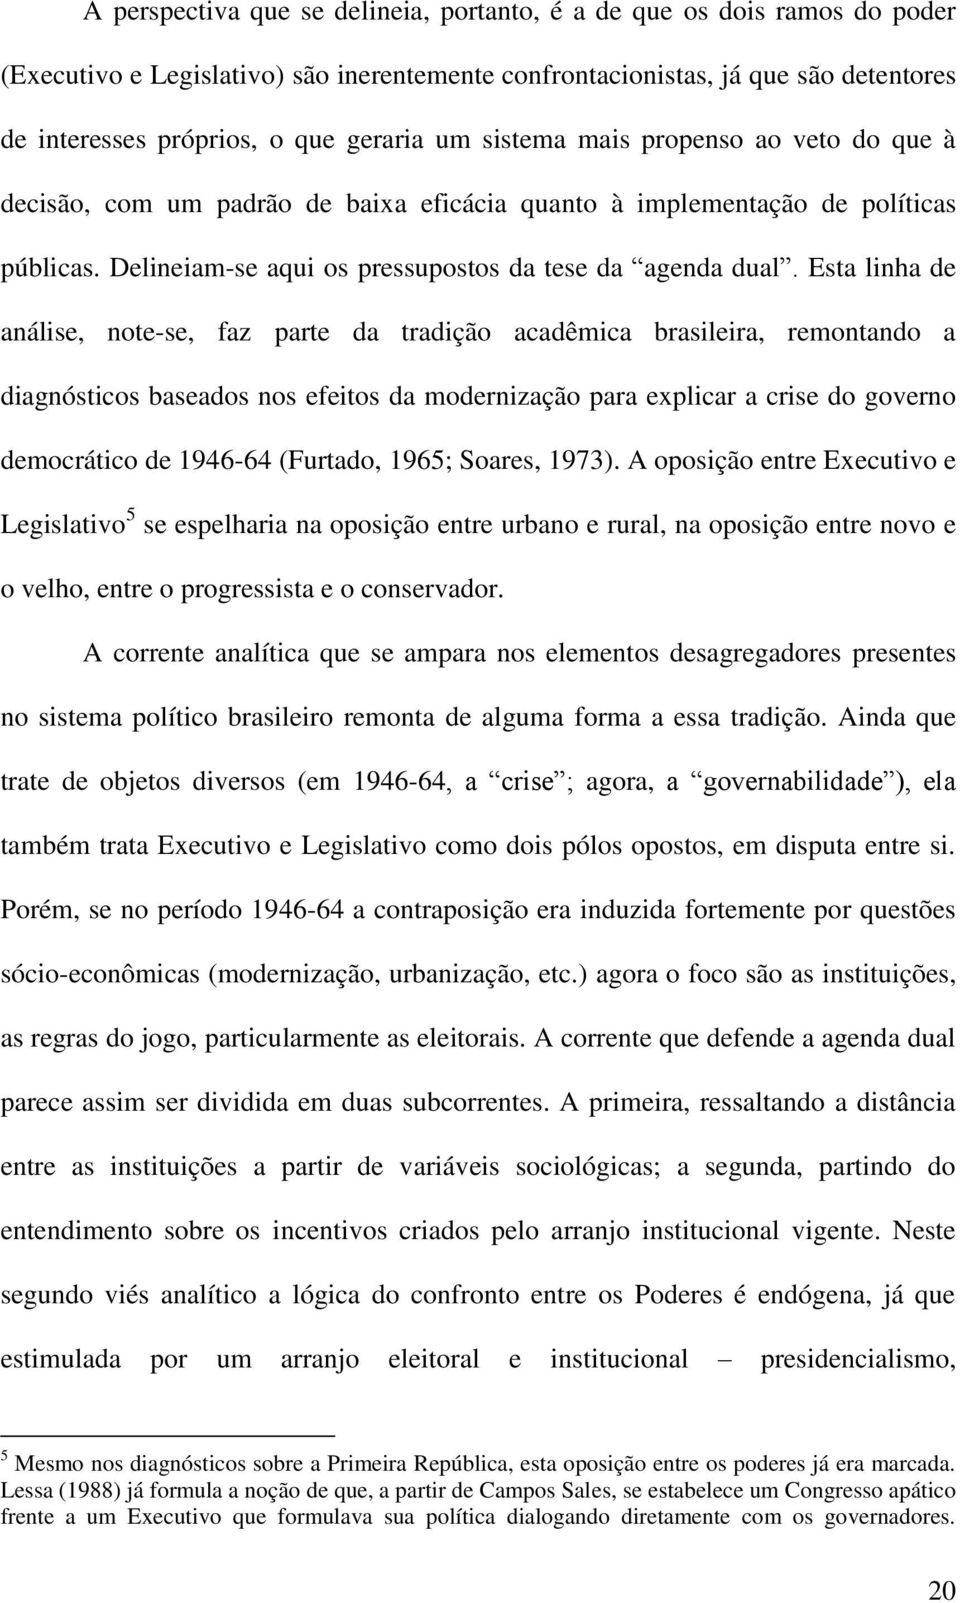 Esta linha de análise, note-se, faz parte da tradição acadêmica brasileira, remontando a diagnósticos baseados nos efeitos da modernização para explicar a crise do governo democrático de 1946-64